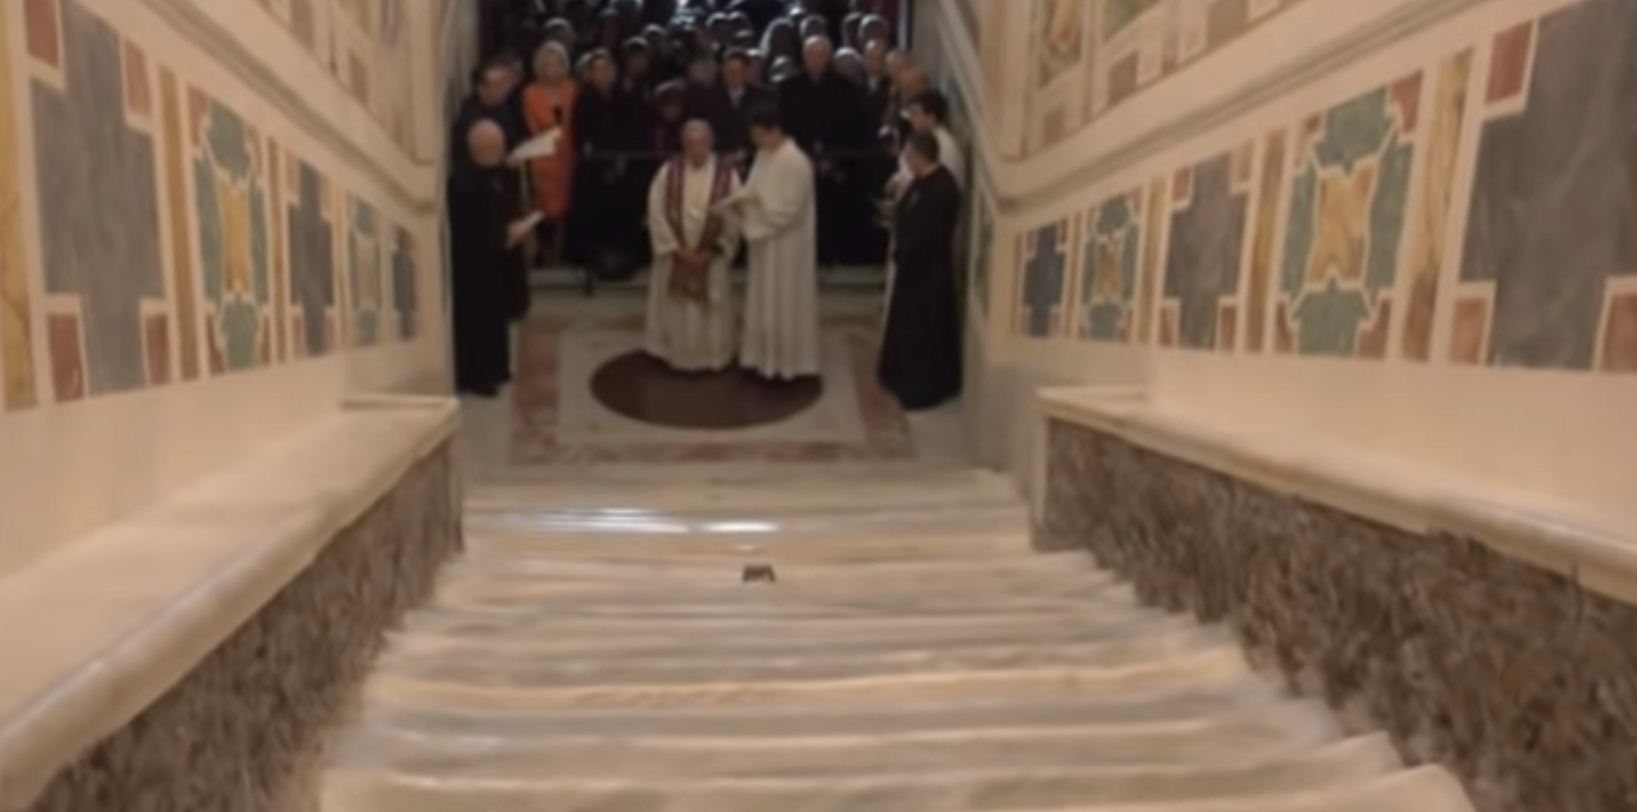 Унікальна подія: у Римі вперше за 300 років для вірян відкрили сходи, по яким ступав Ісус Христос (ВІДЕО)